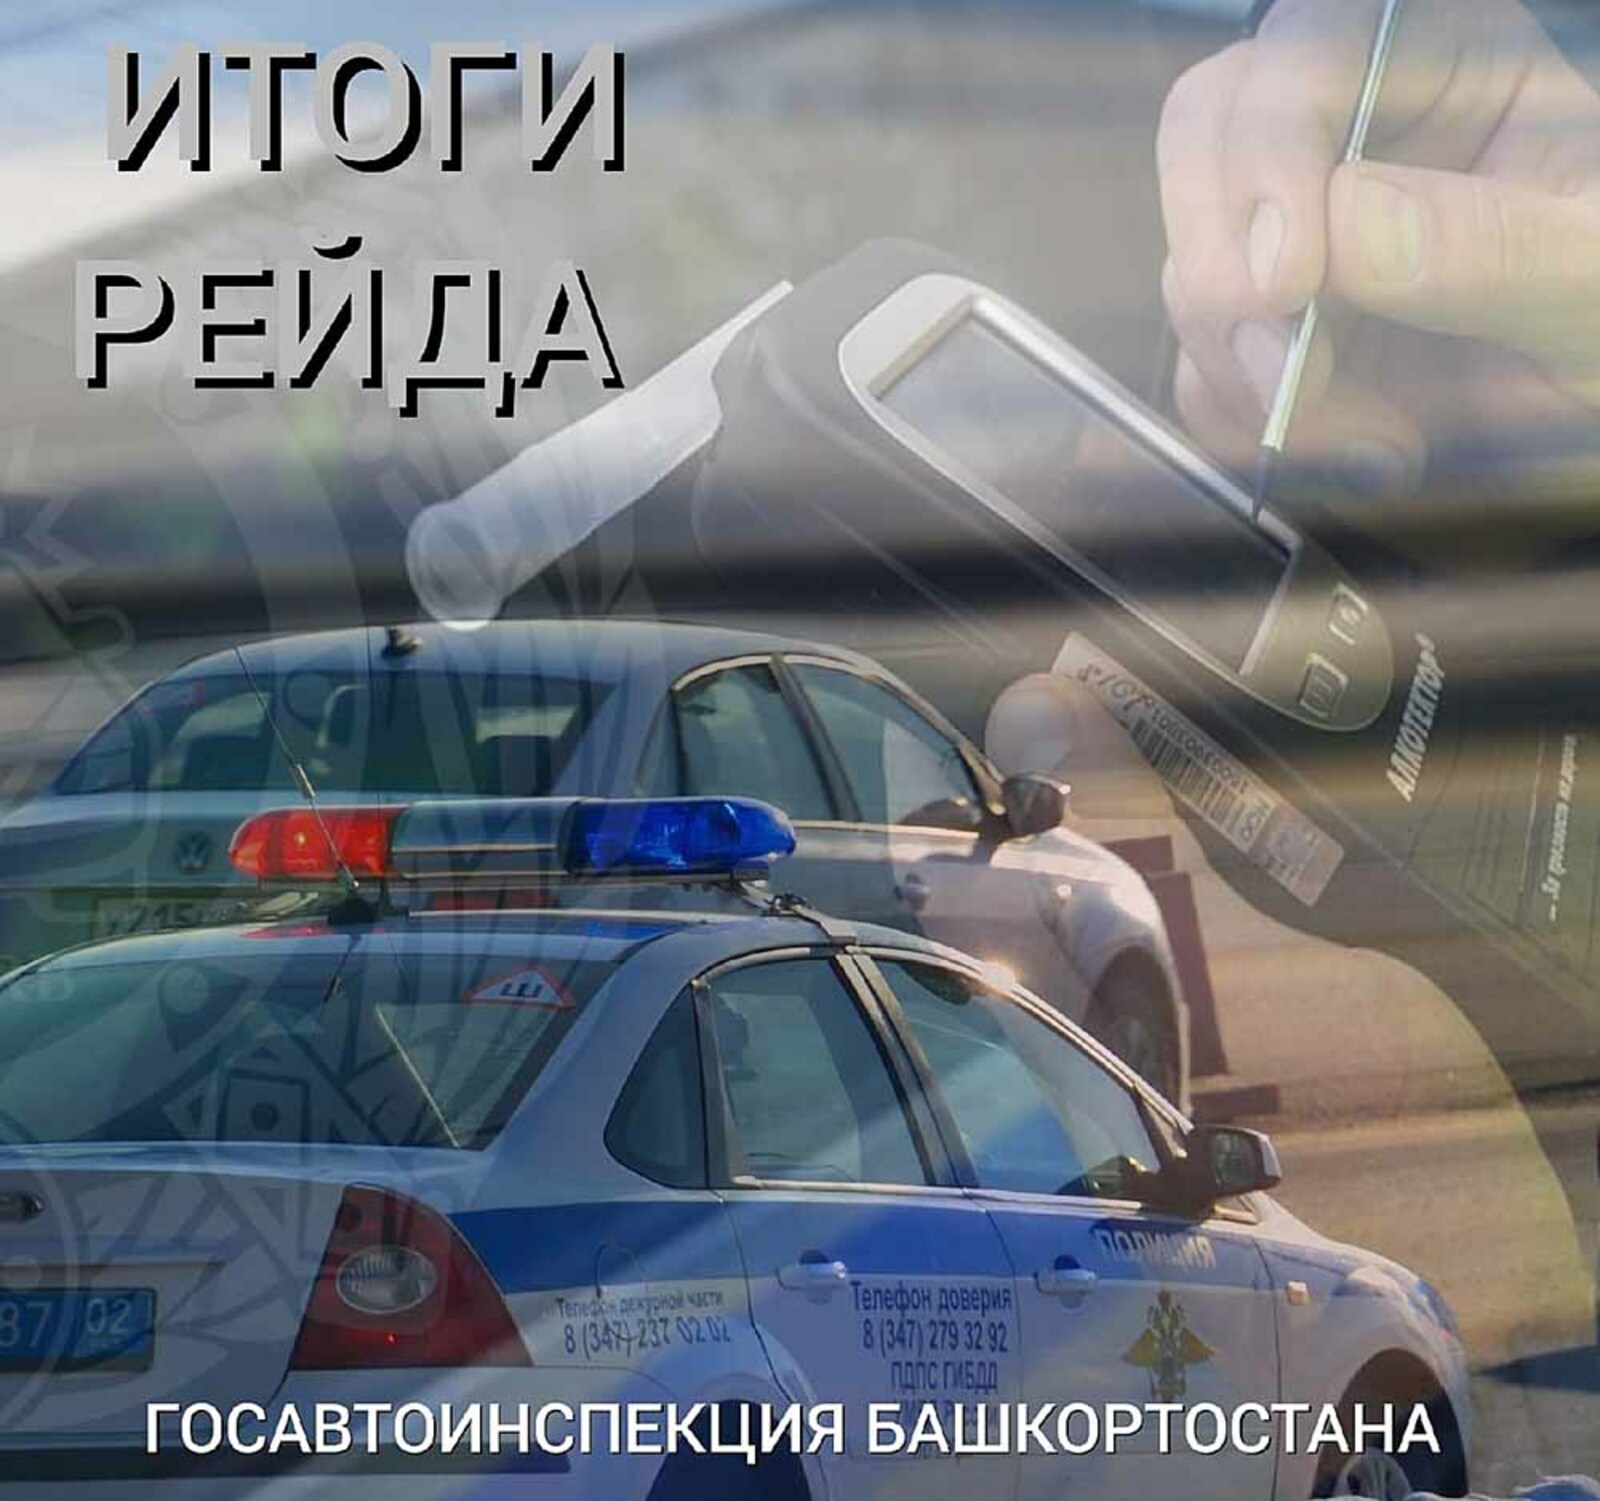 В Башкирии за сутки задержаны 38 нетрезвых водителей